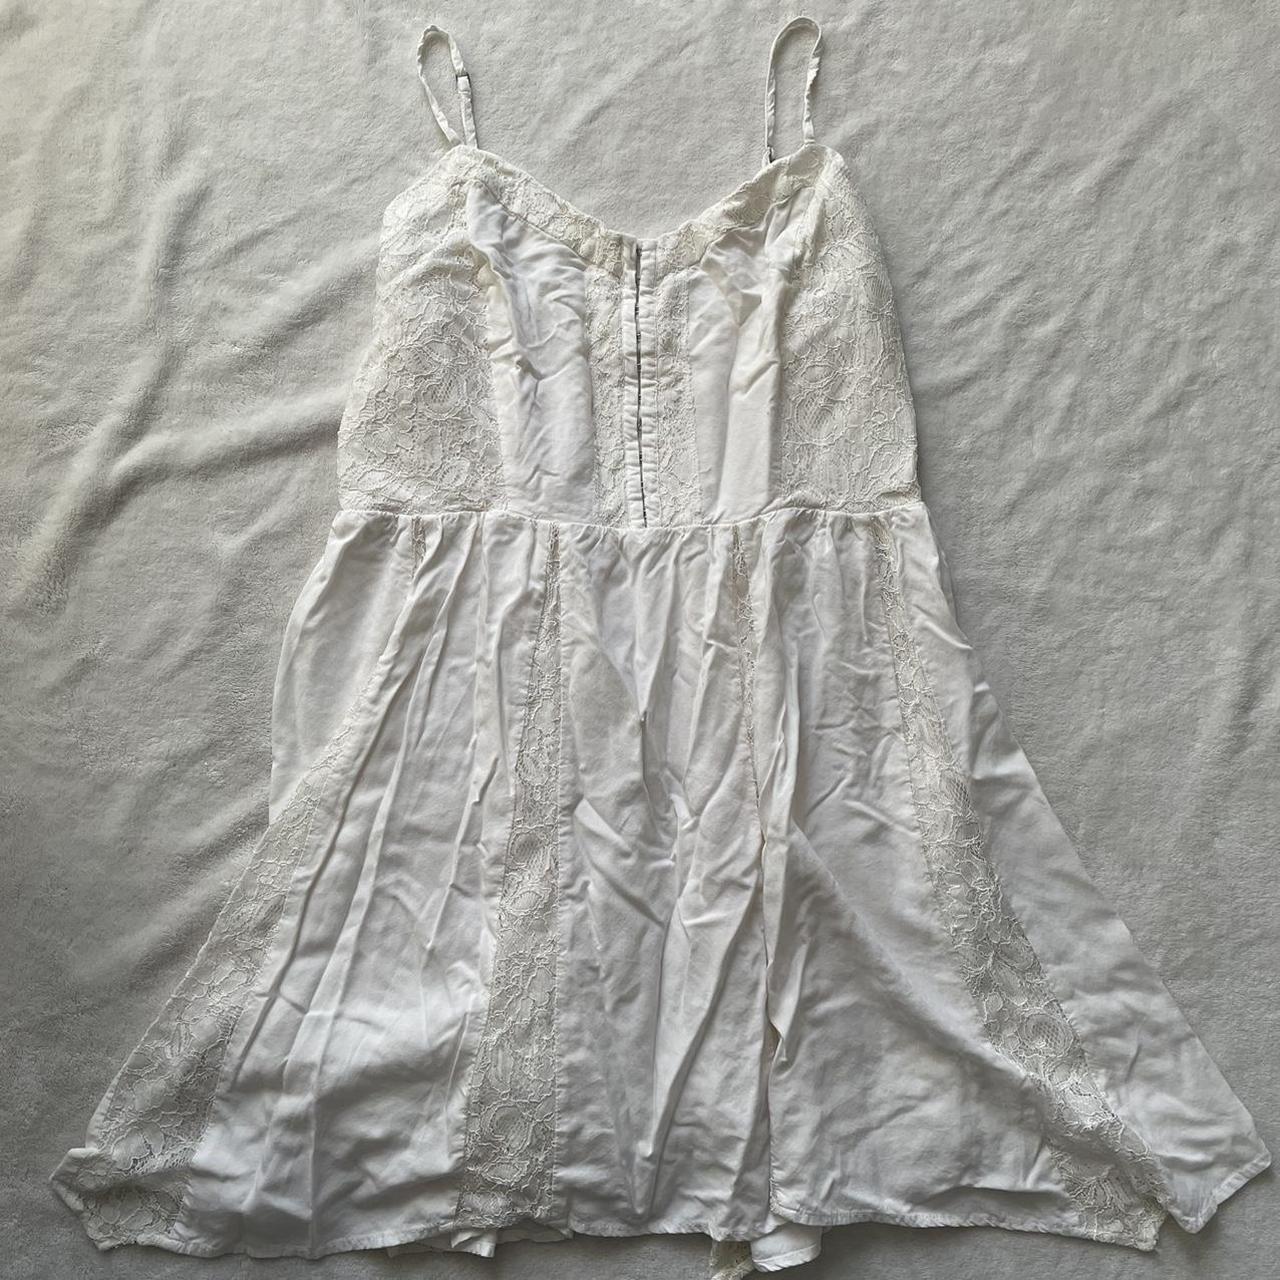 Product Image 1 - ͙⁺˚*･༓lace fairy dress༓･*˚⁺‧͙

☆ white lace